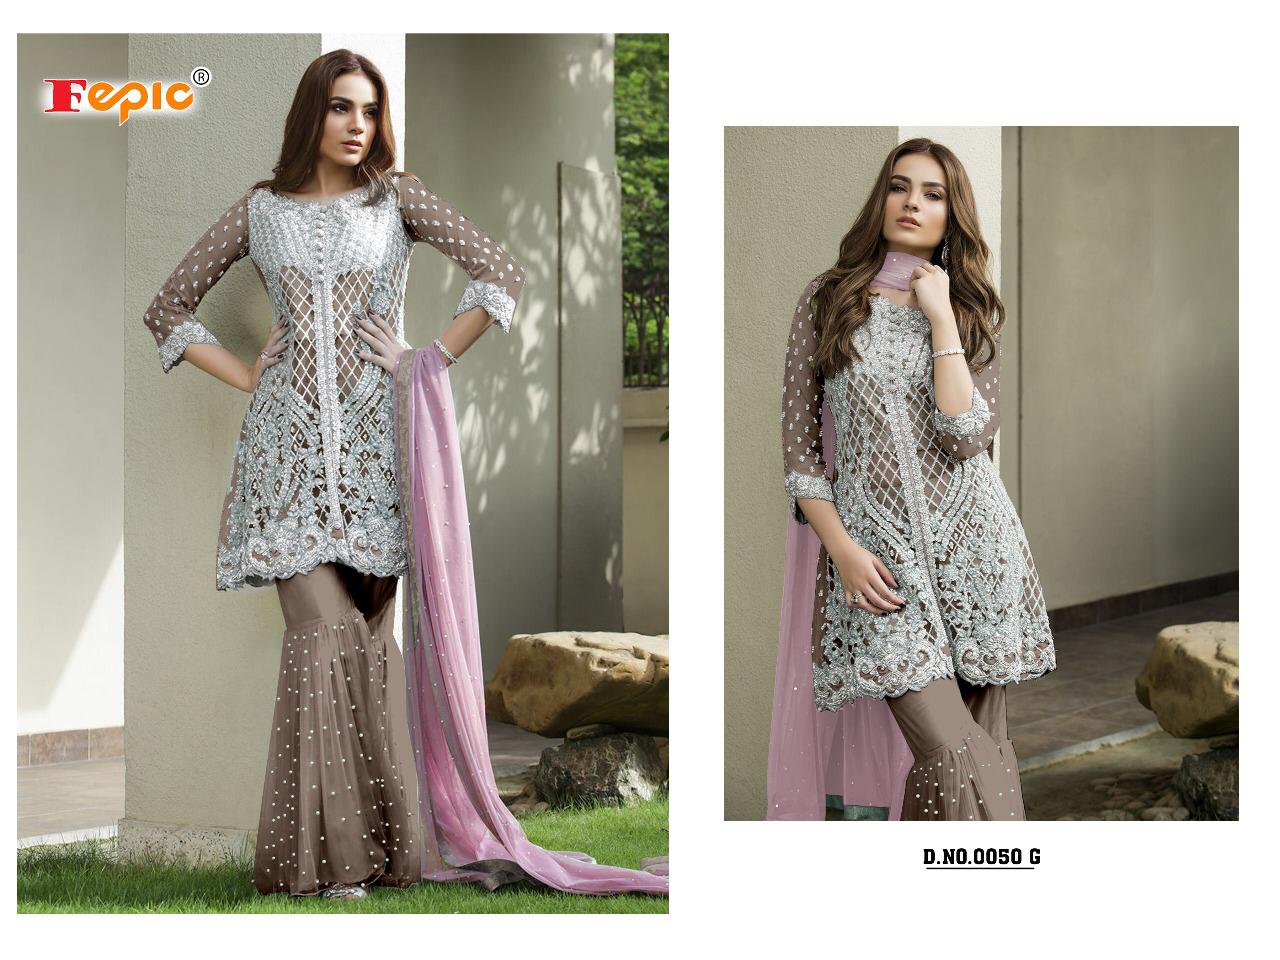 Fepic sanober blockbuster vol 4.1 party wear heavy embroidered fancy salwar kameez catalog